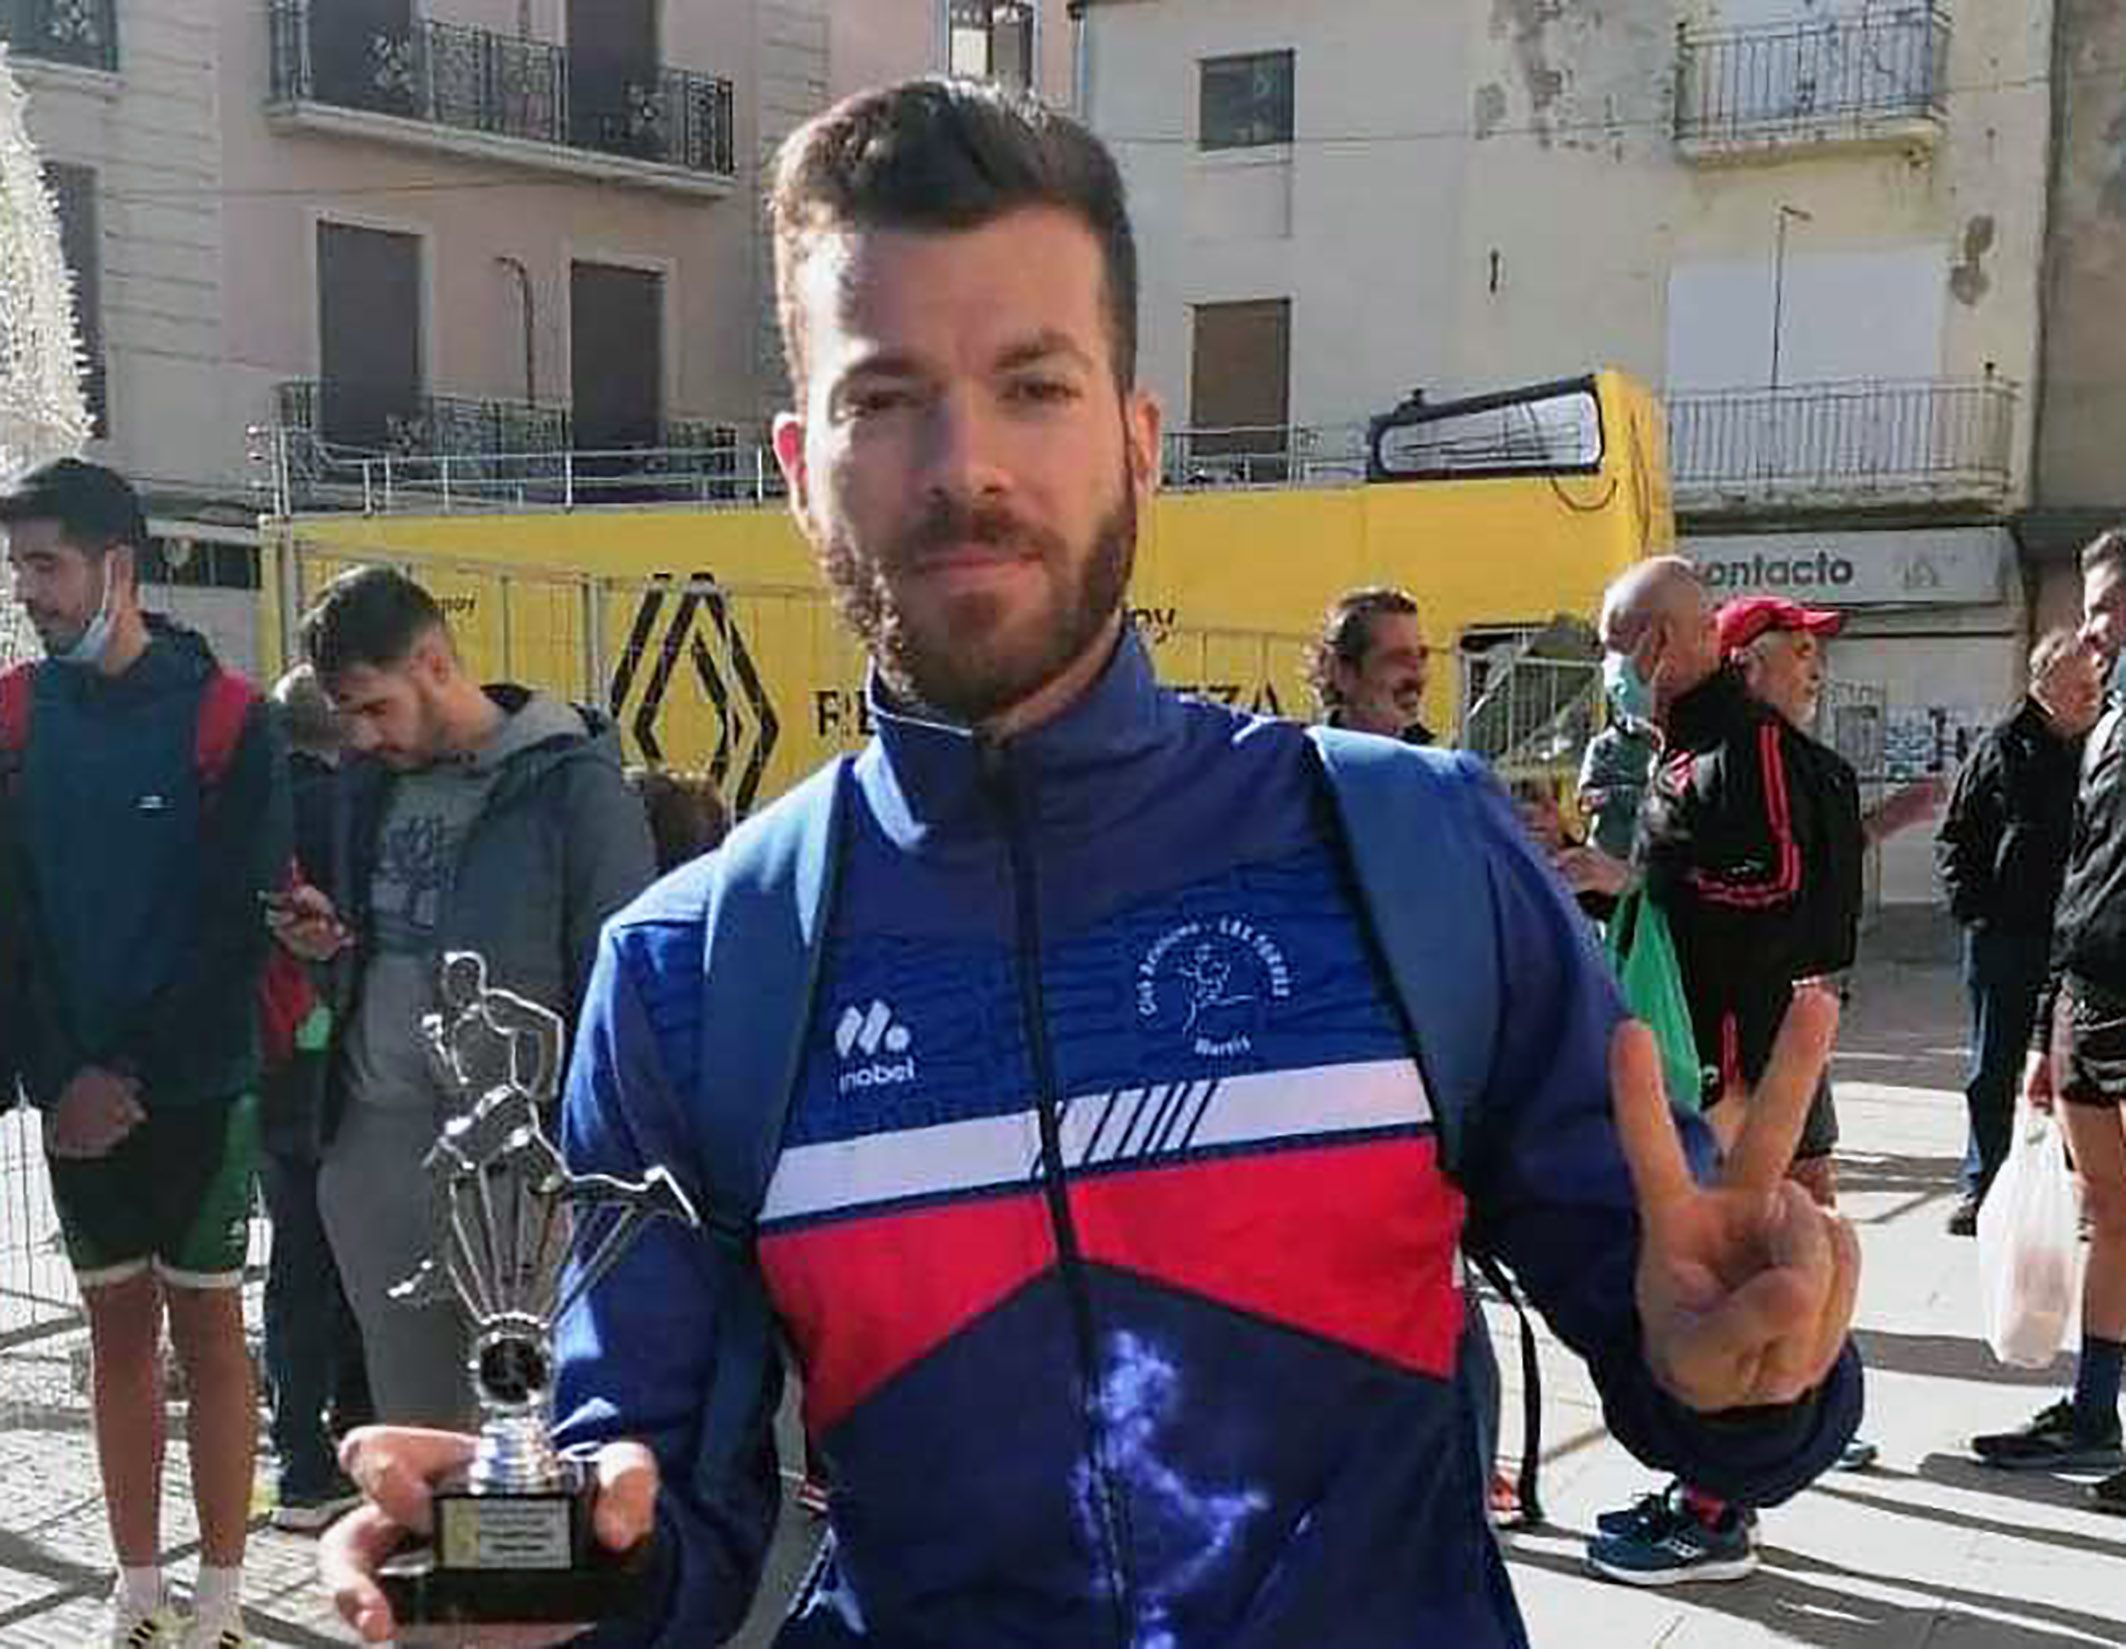 Marcos Prieto del club Atletismo Las Torres plata en categoría senior de la media maratón de Cieza